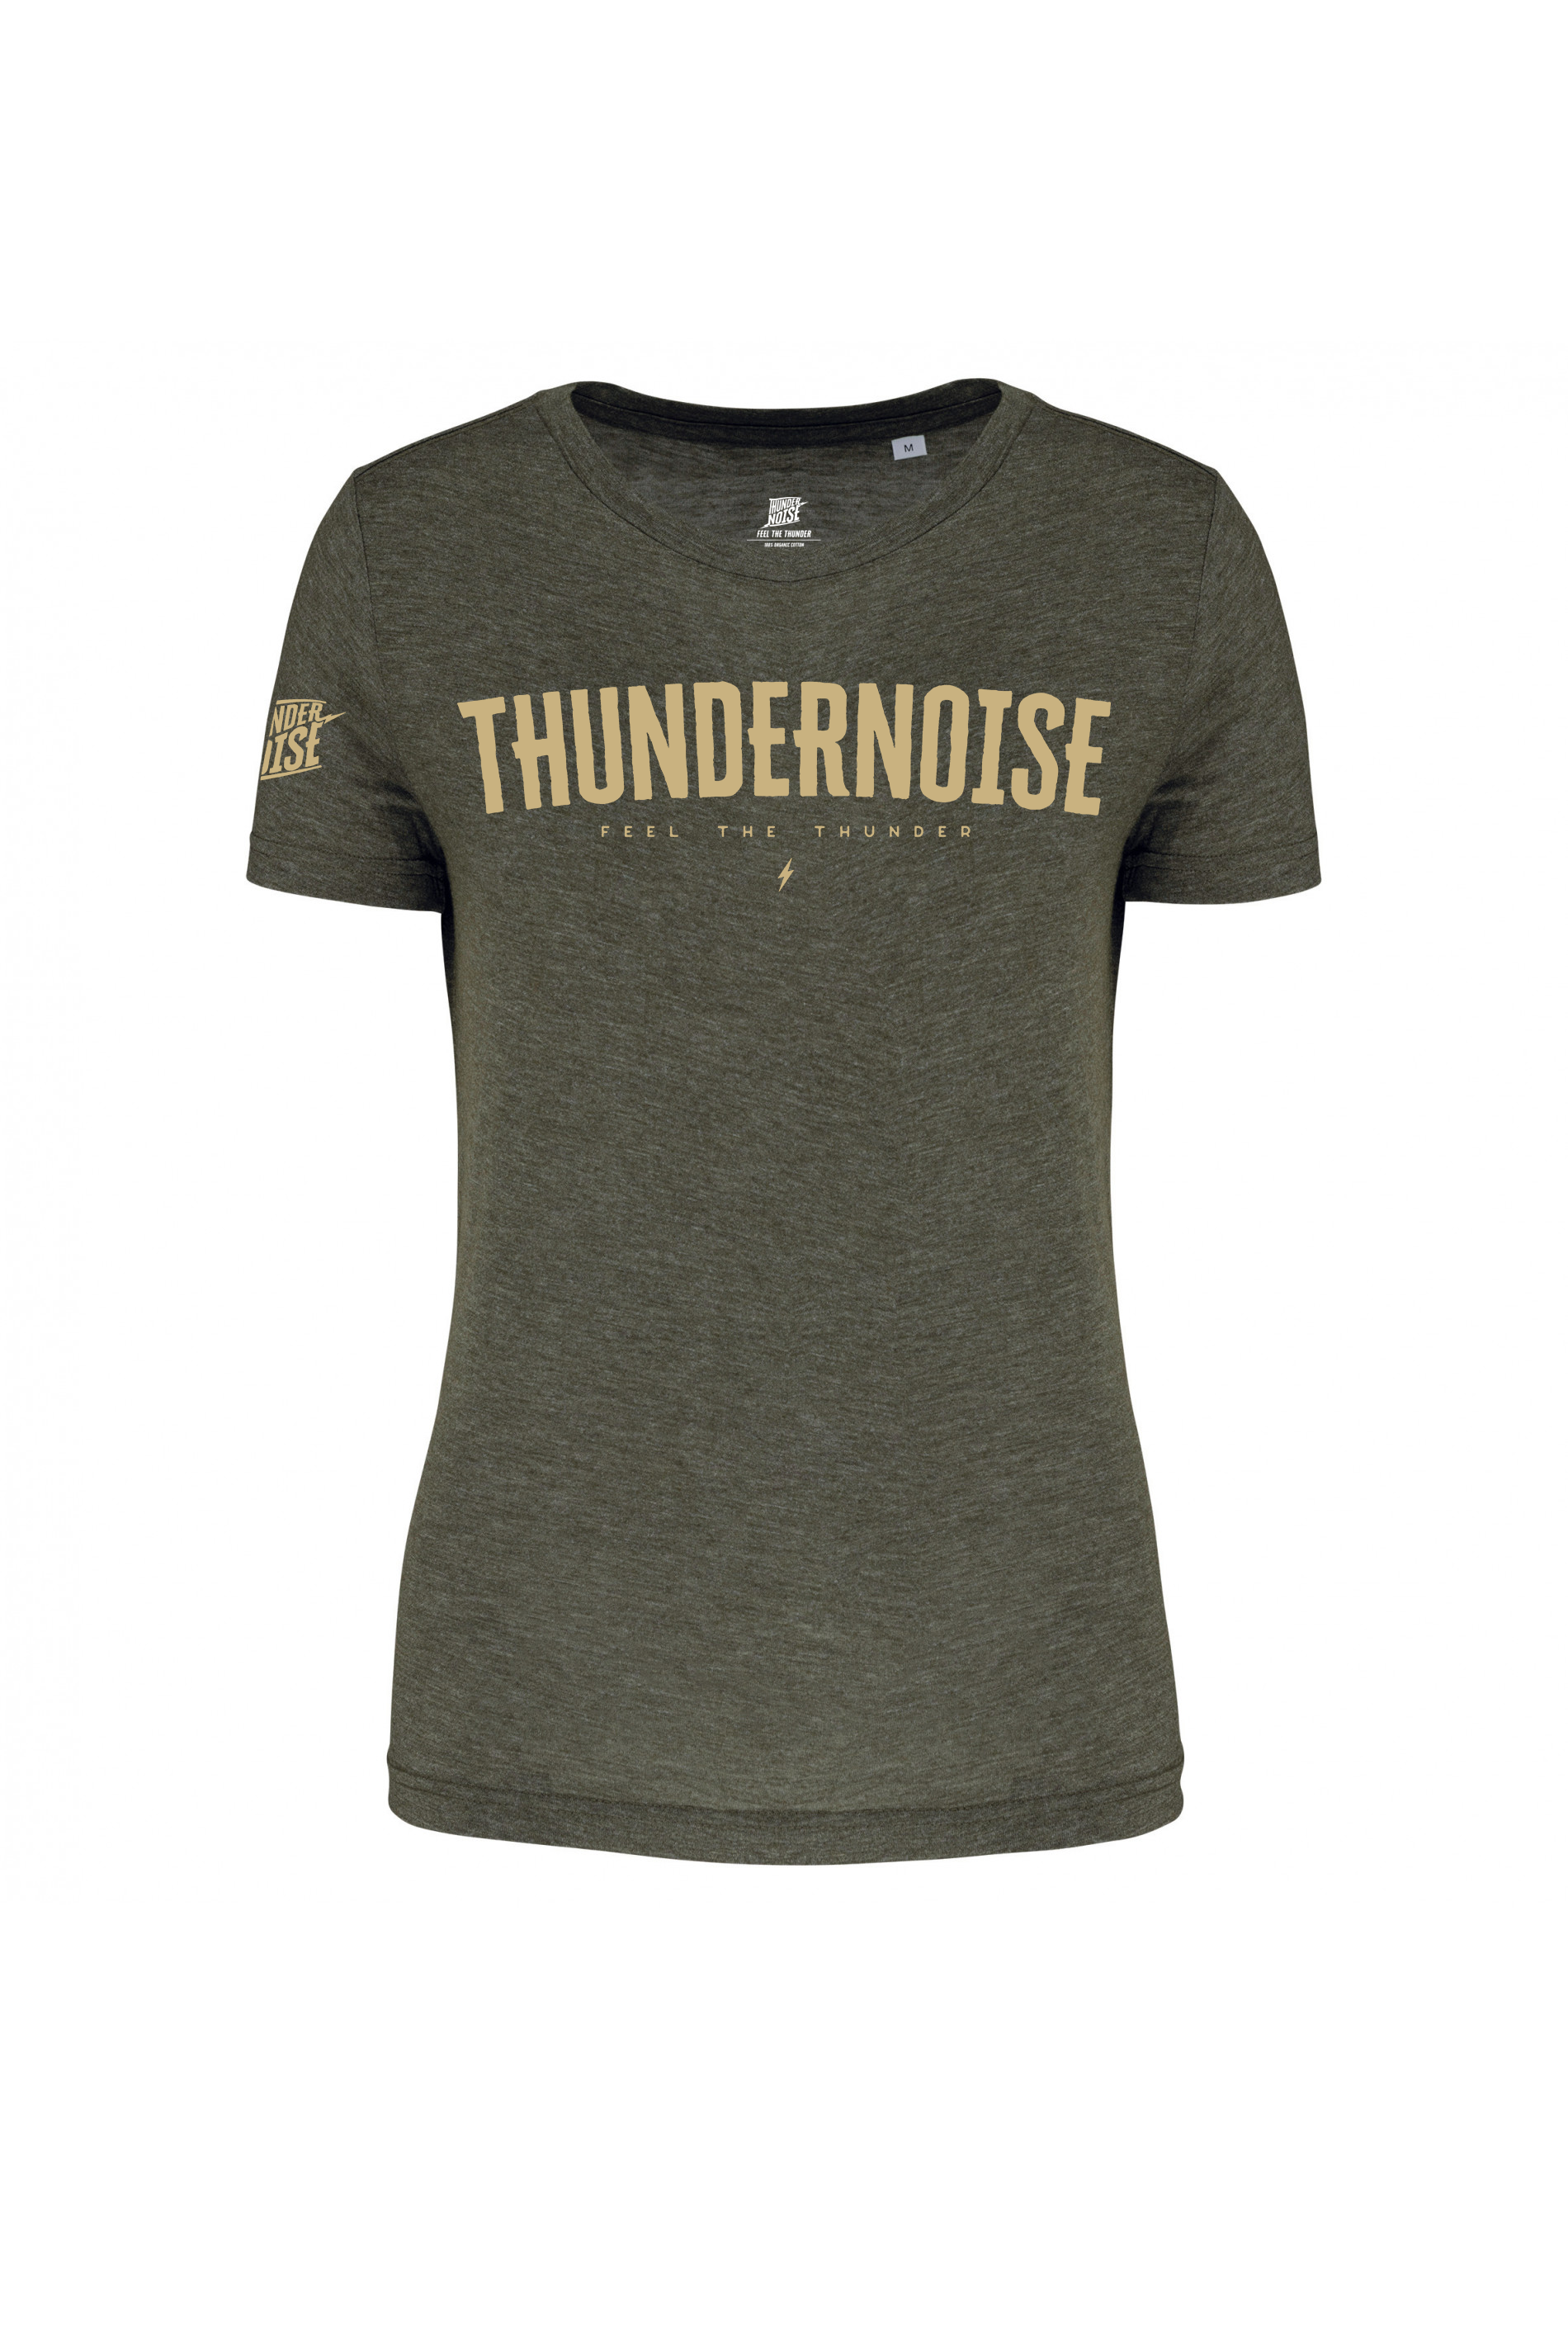 Thundernoise - Box Logo (women)